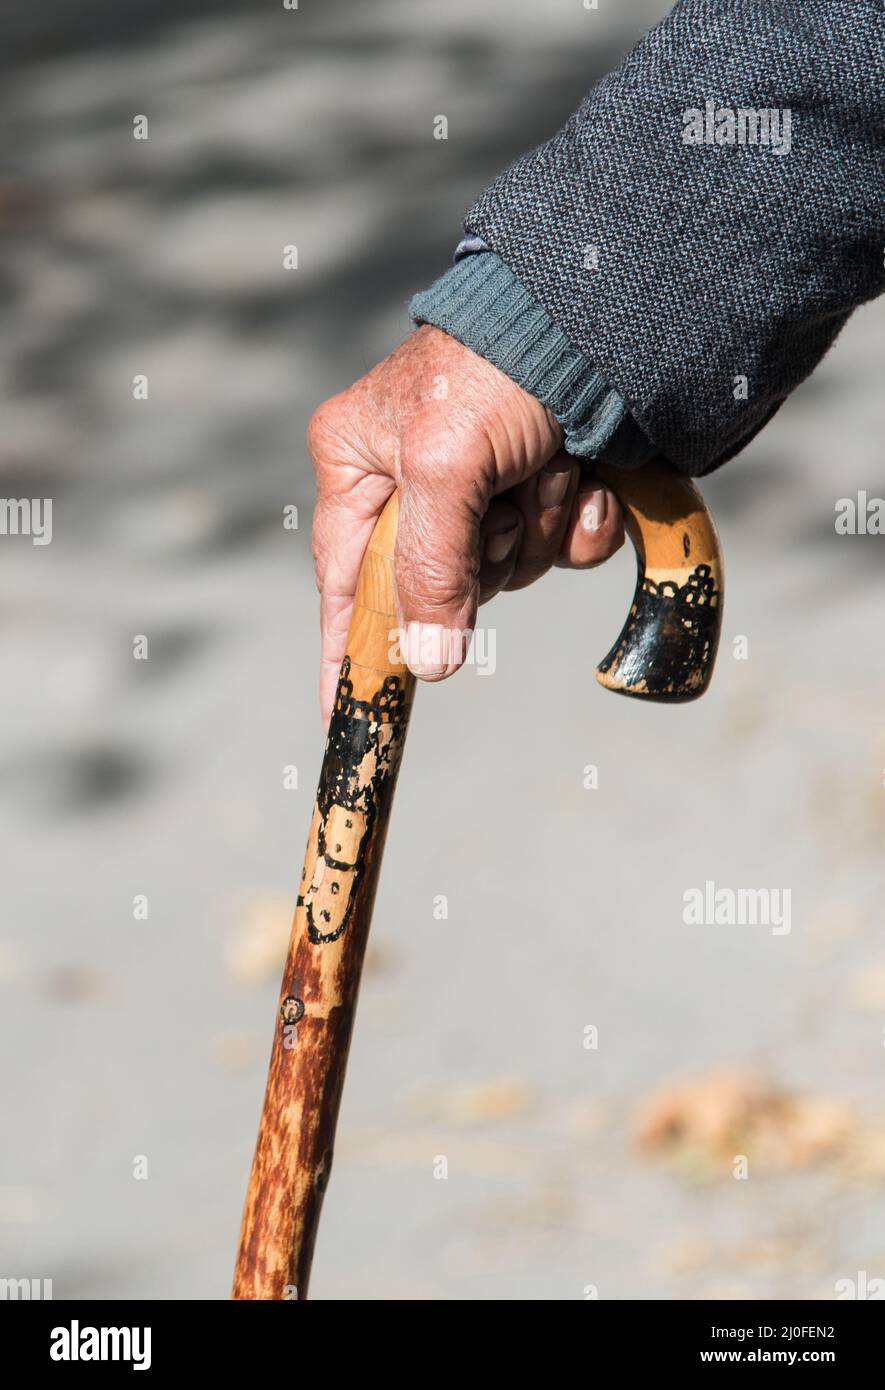 Homme âgé tenant un bâton de marche en bois Banque D'Images